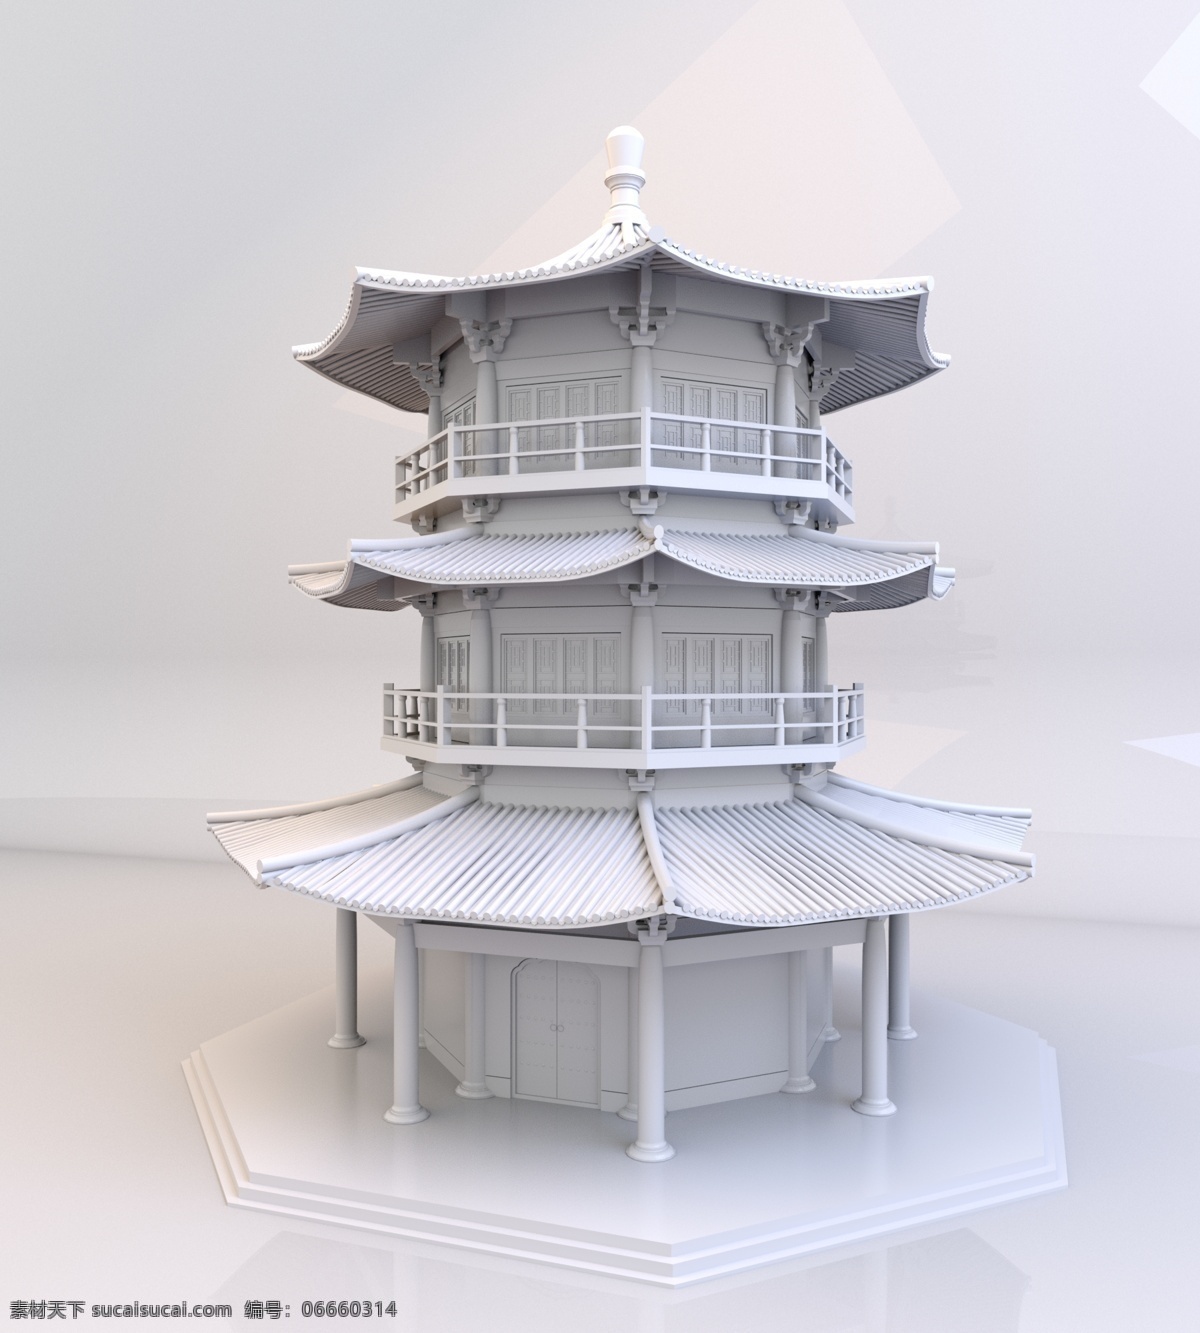 中国 古建筑 楼阁 模型 中国风 塔楼